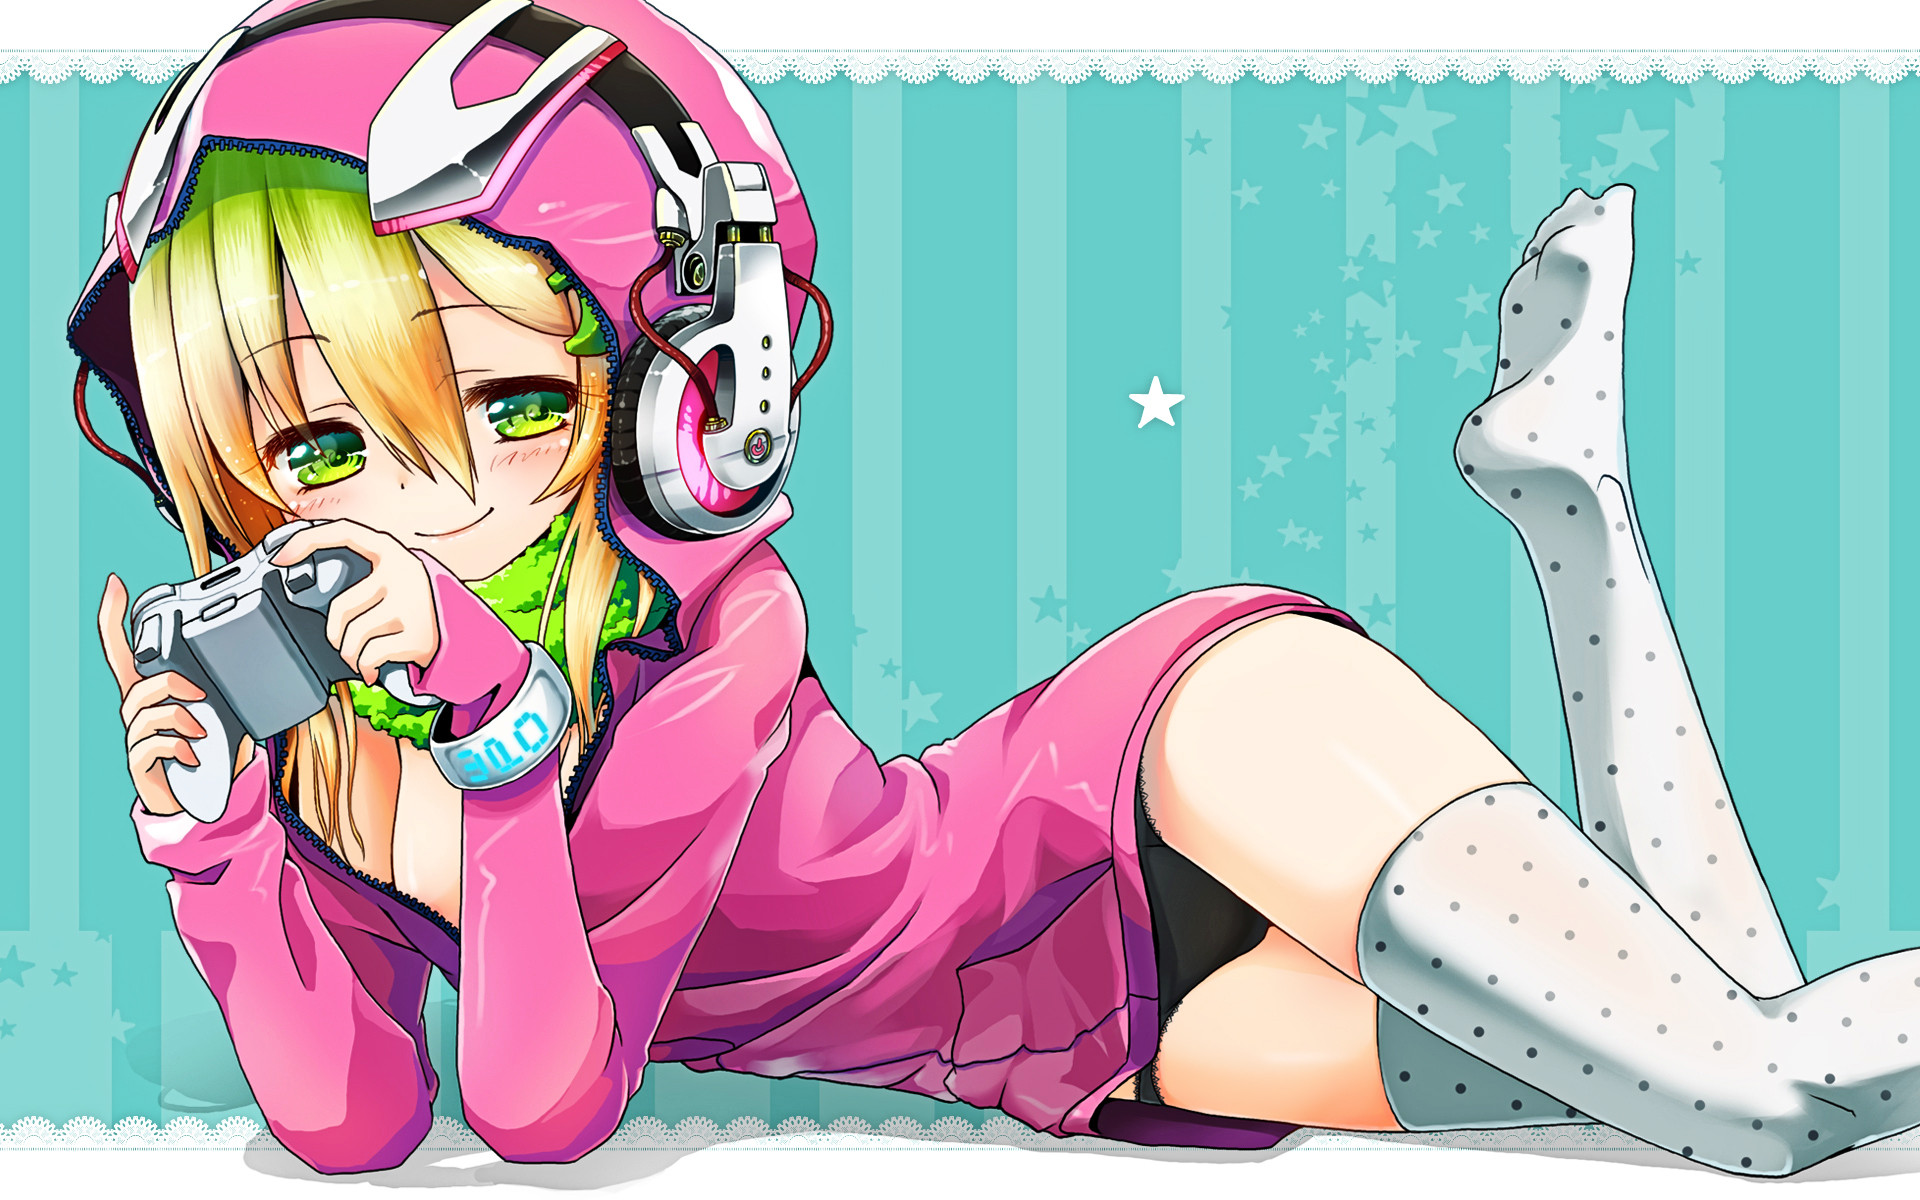 Anime girl gamer wallpaper